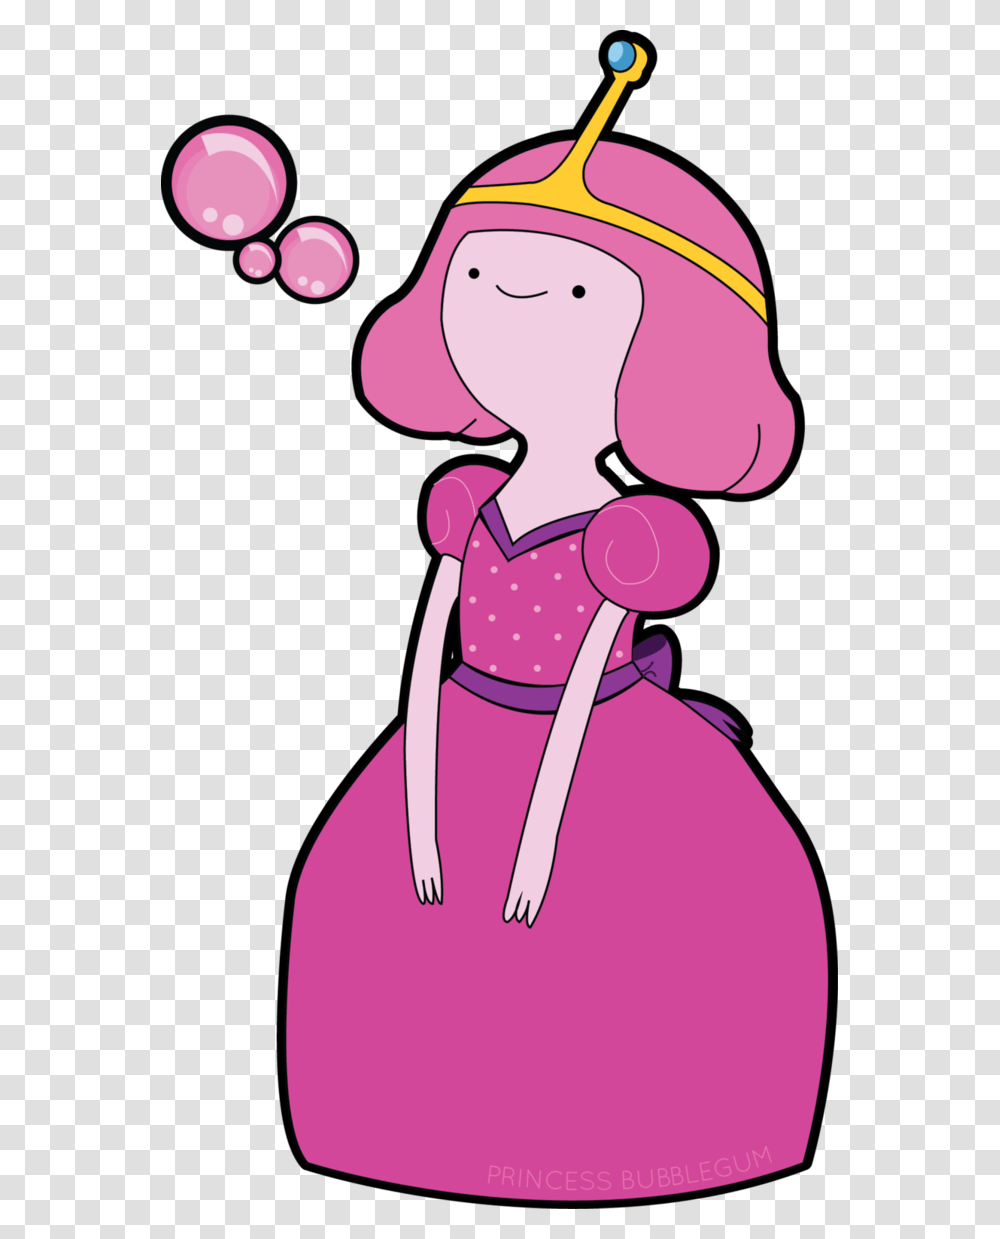 Princess bubble yum